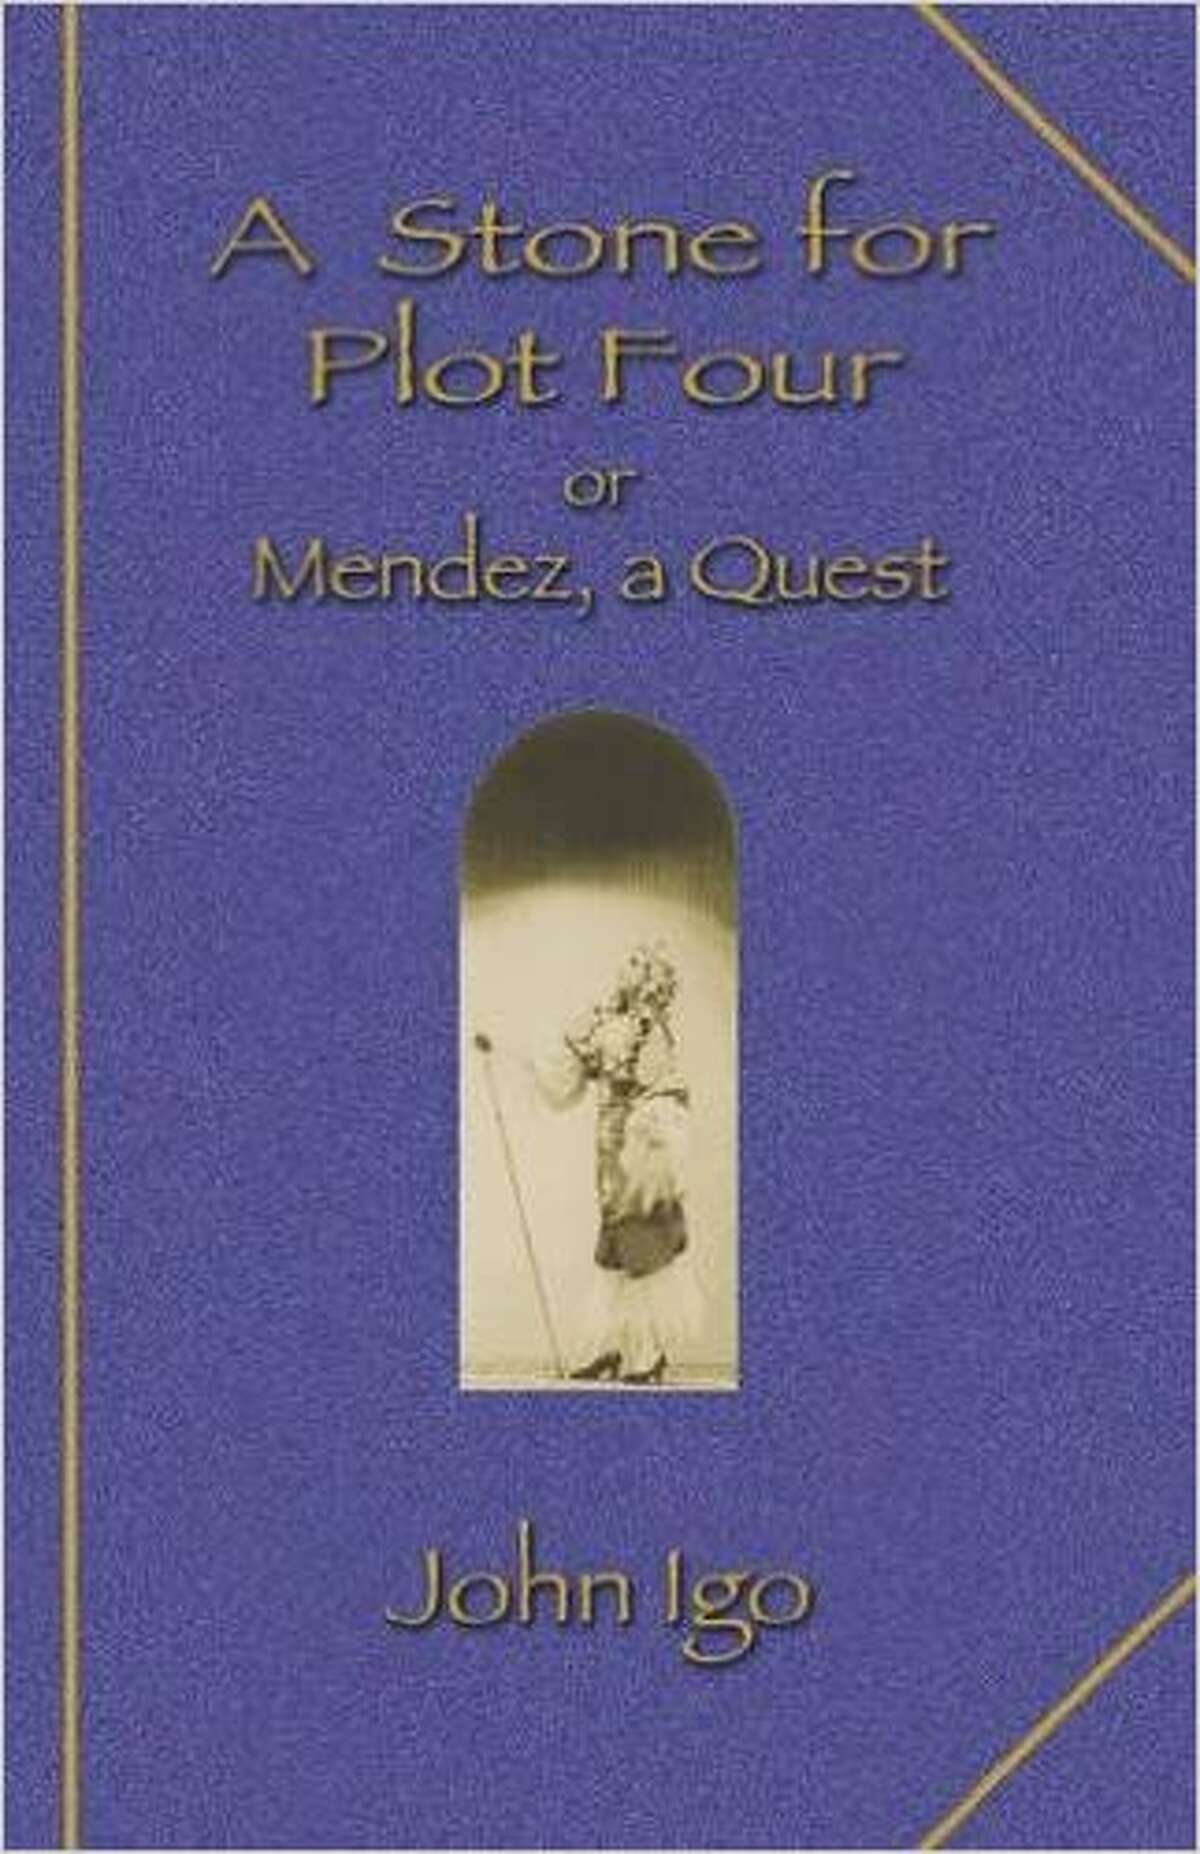 A Stone for Plot Four or Mendez, a Quest by John Igo